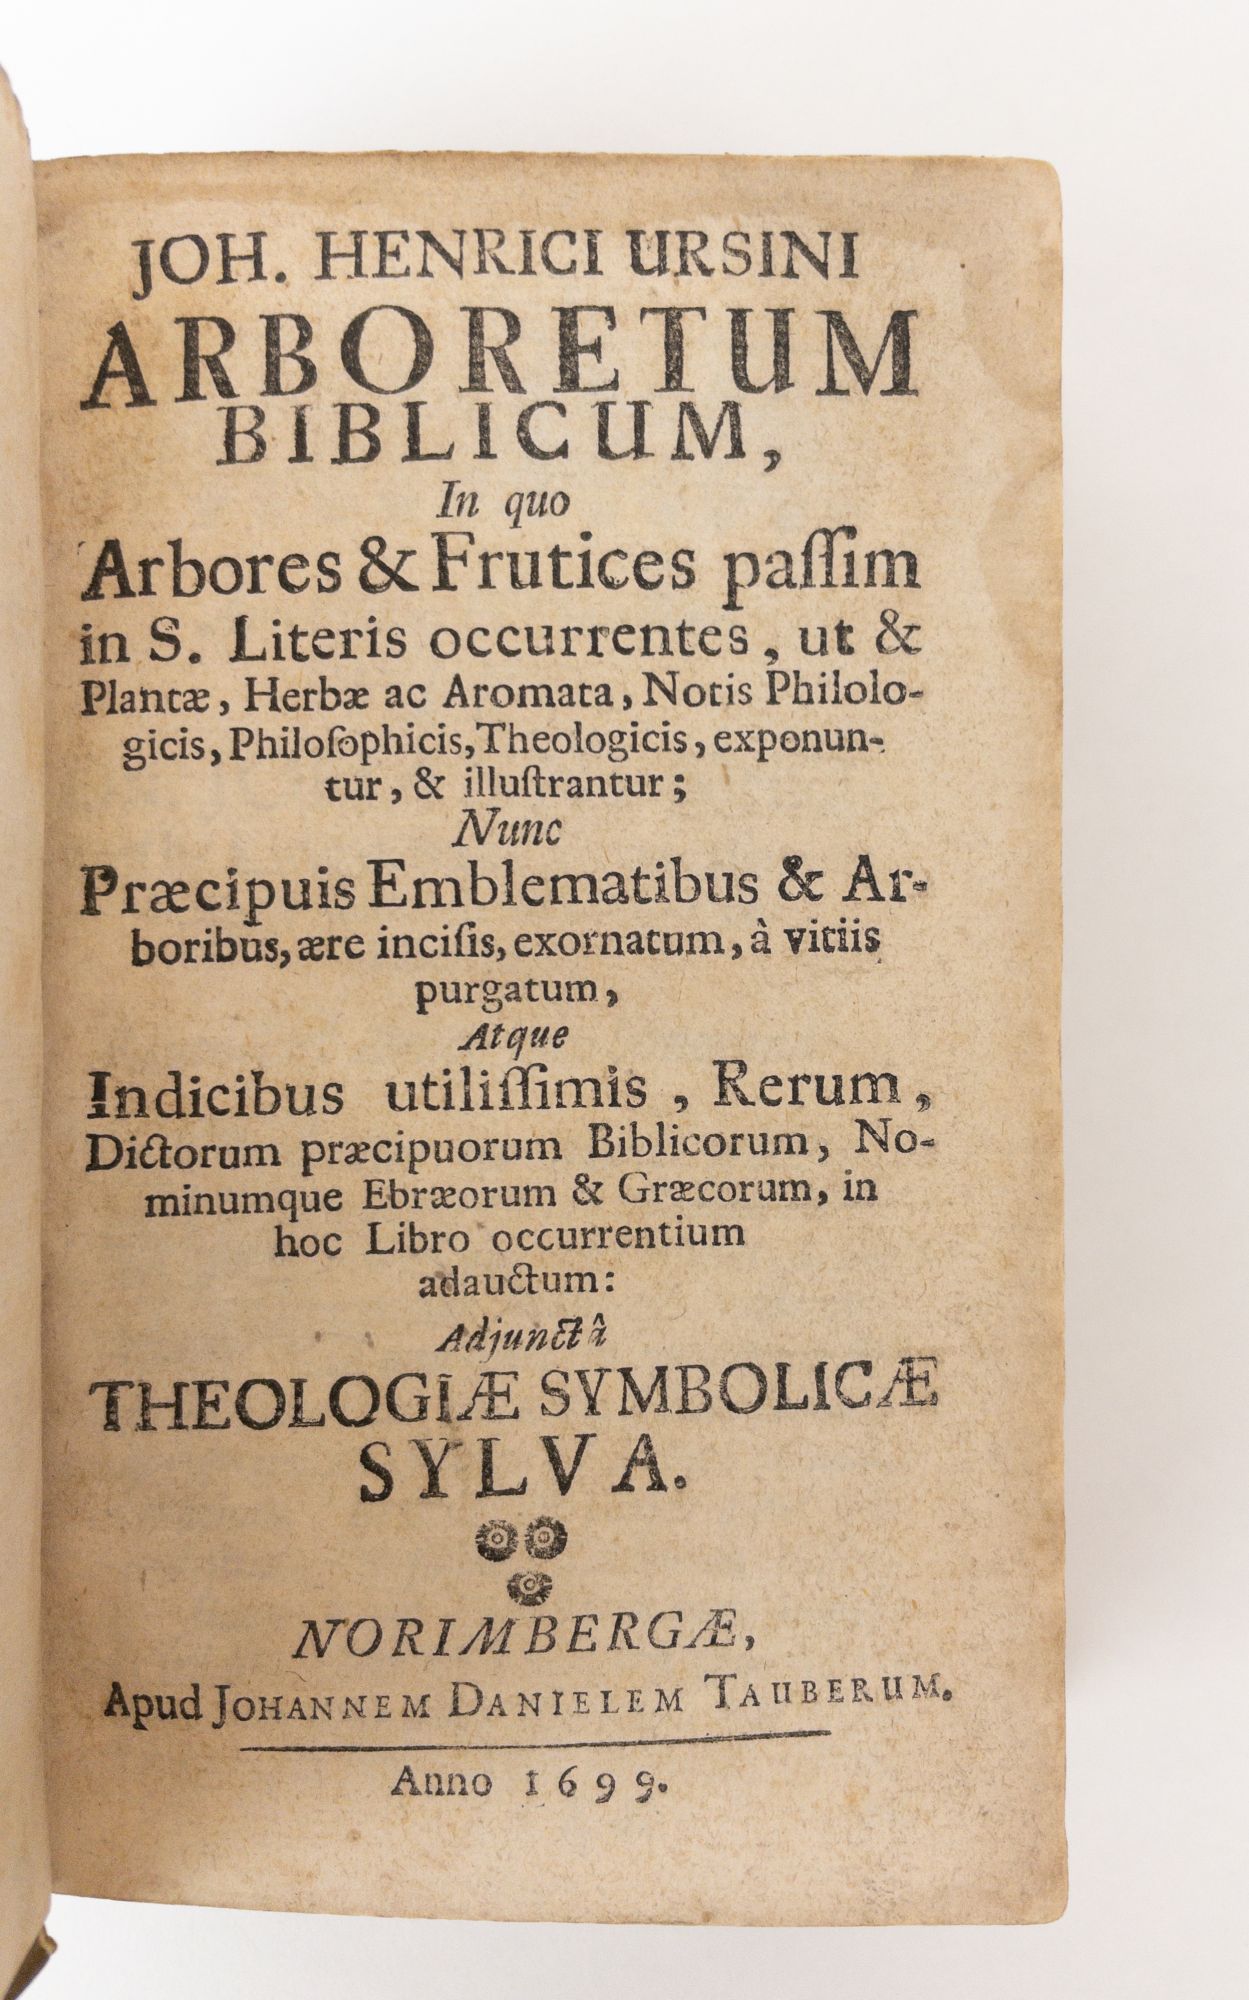 Product Image for ARBORETUM BIBLICUM, IN QUO ARBORES & FRUCTICES PASSIM IN S. LITERIS OCCURRENTES [Part One of Three]